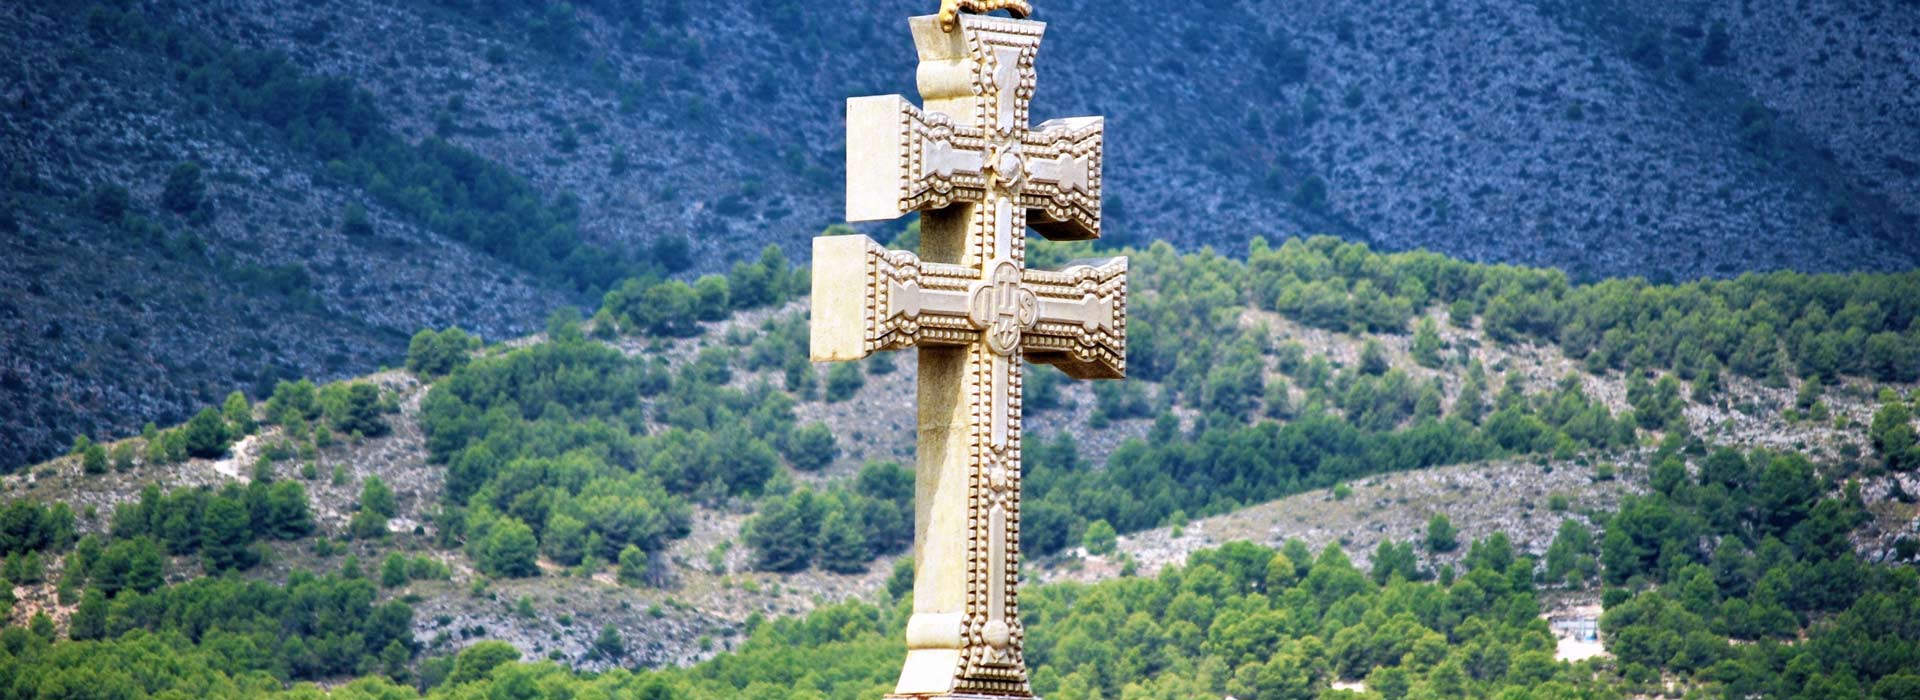 cruz de caravaca significado